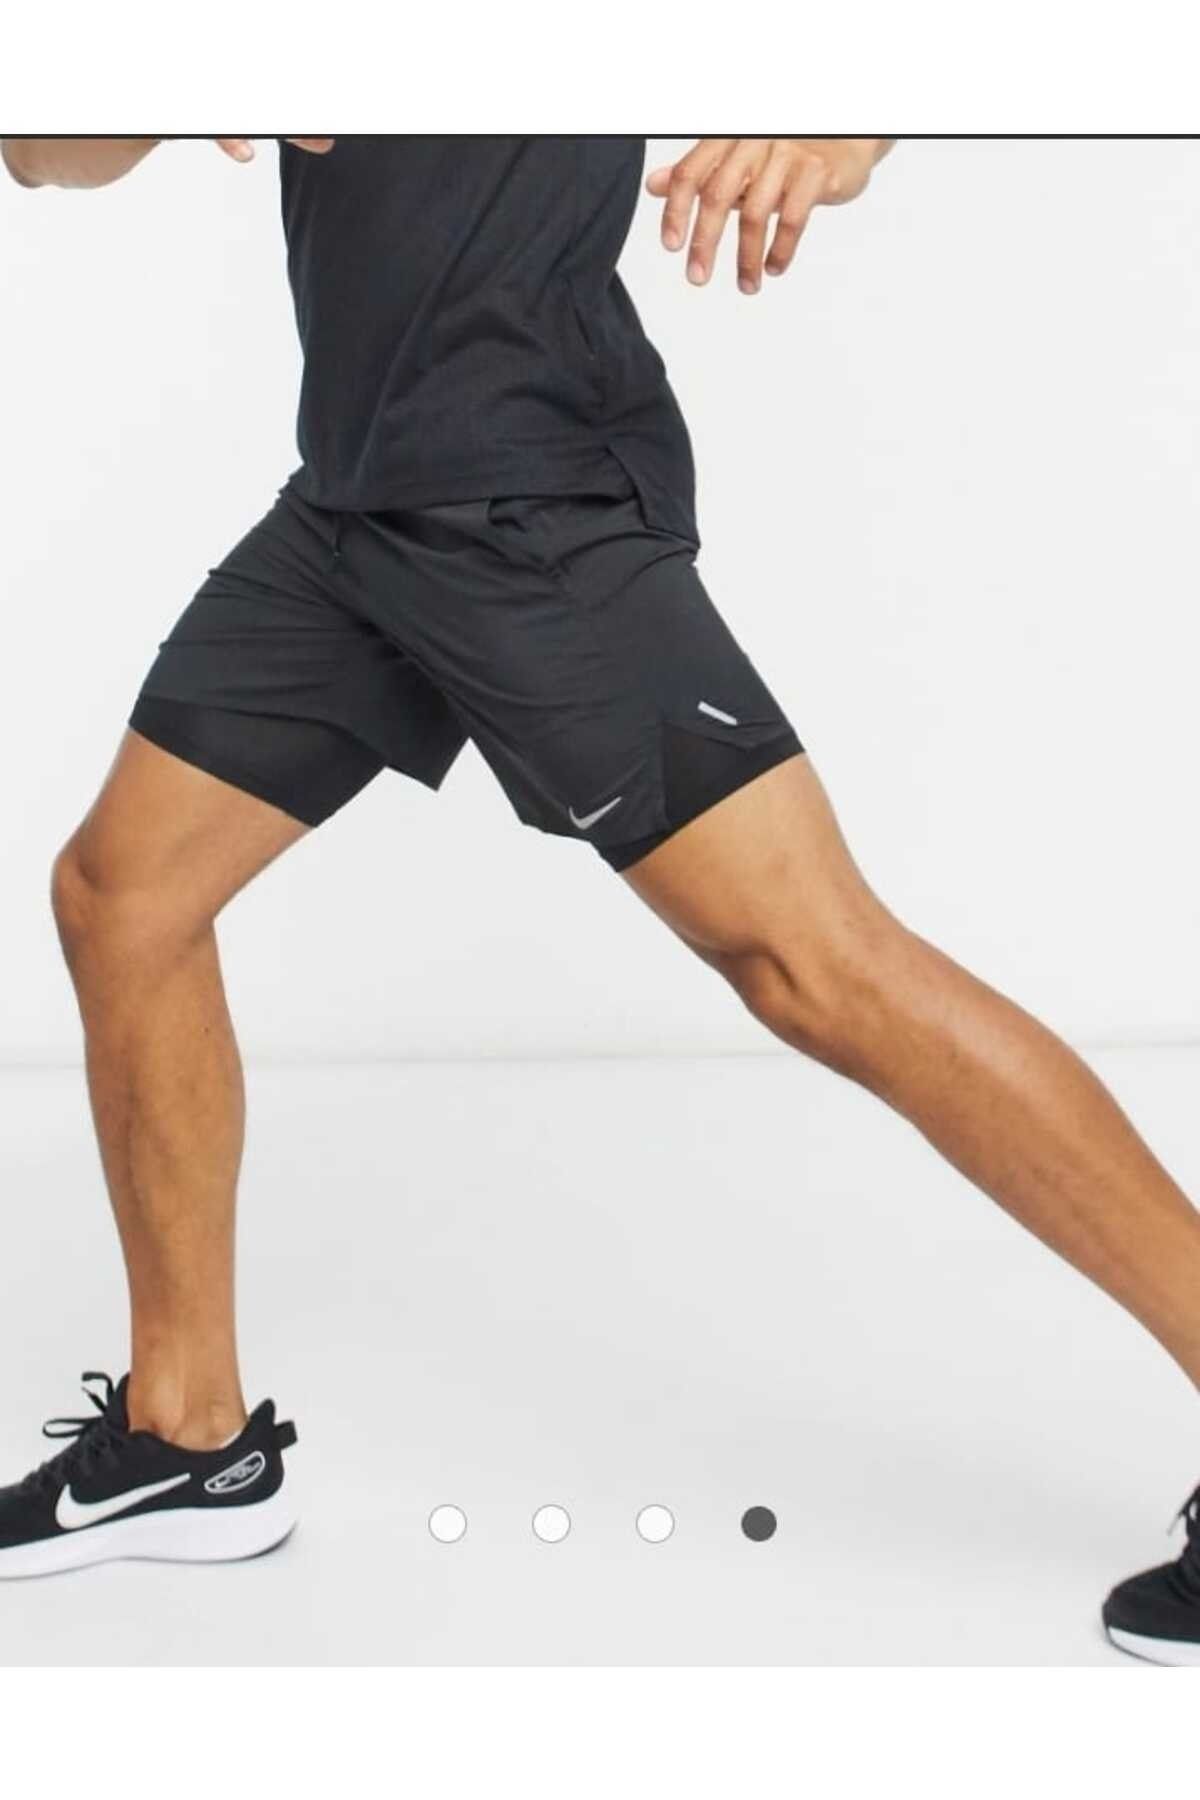 Nike Flex Stride 18 cm Running Erkek Koşu Şortu 2 si 1 arada taytlı CNGSTORE